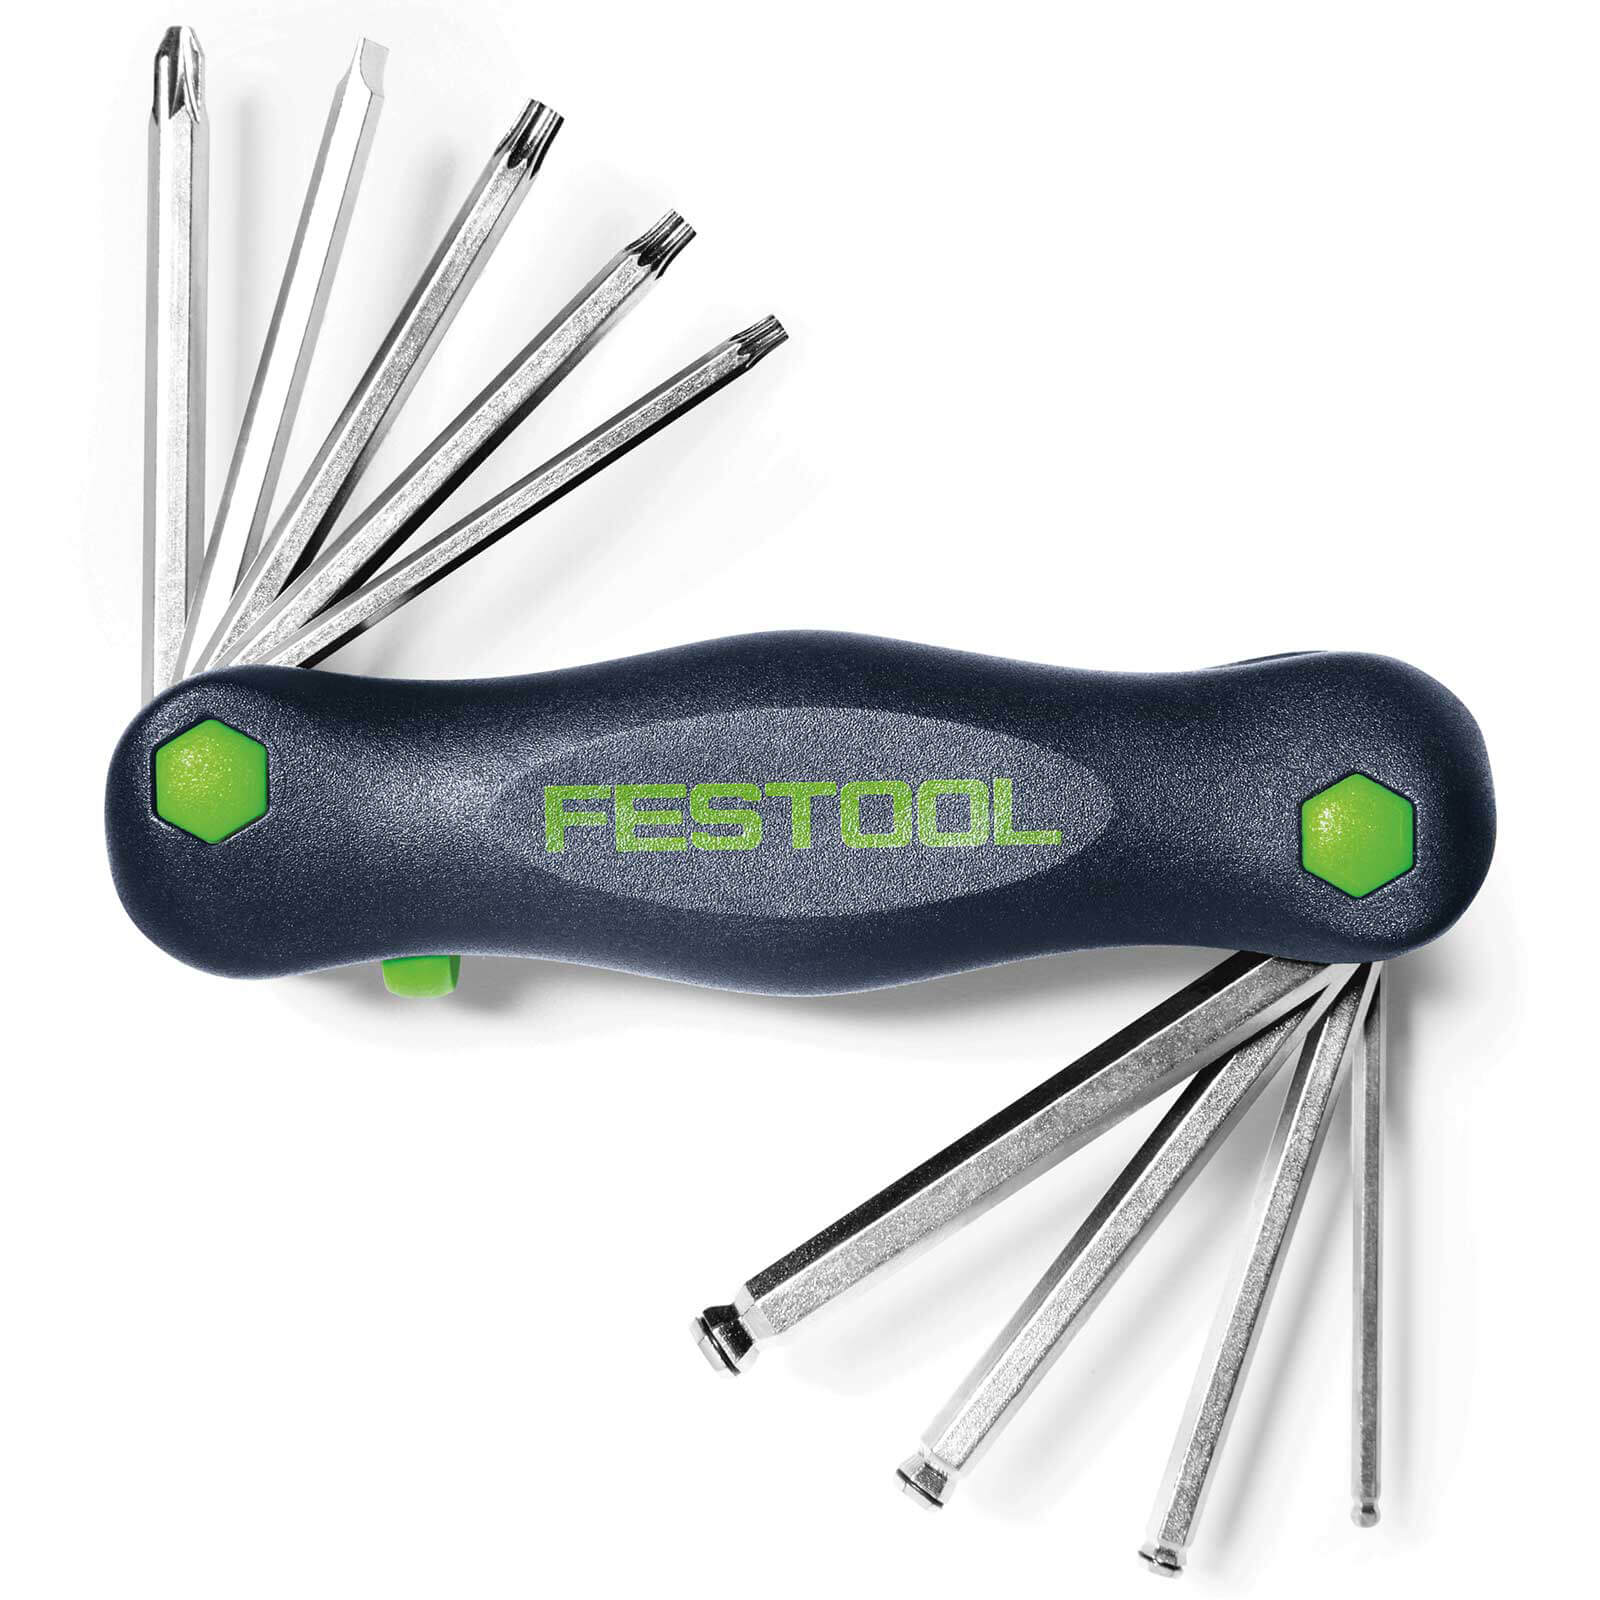 Festool Hex Key Multi Function Tool Set